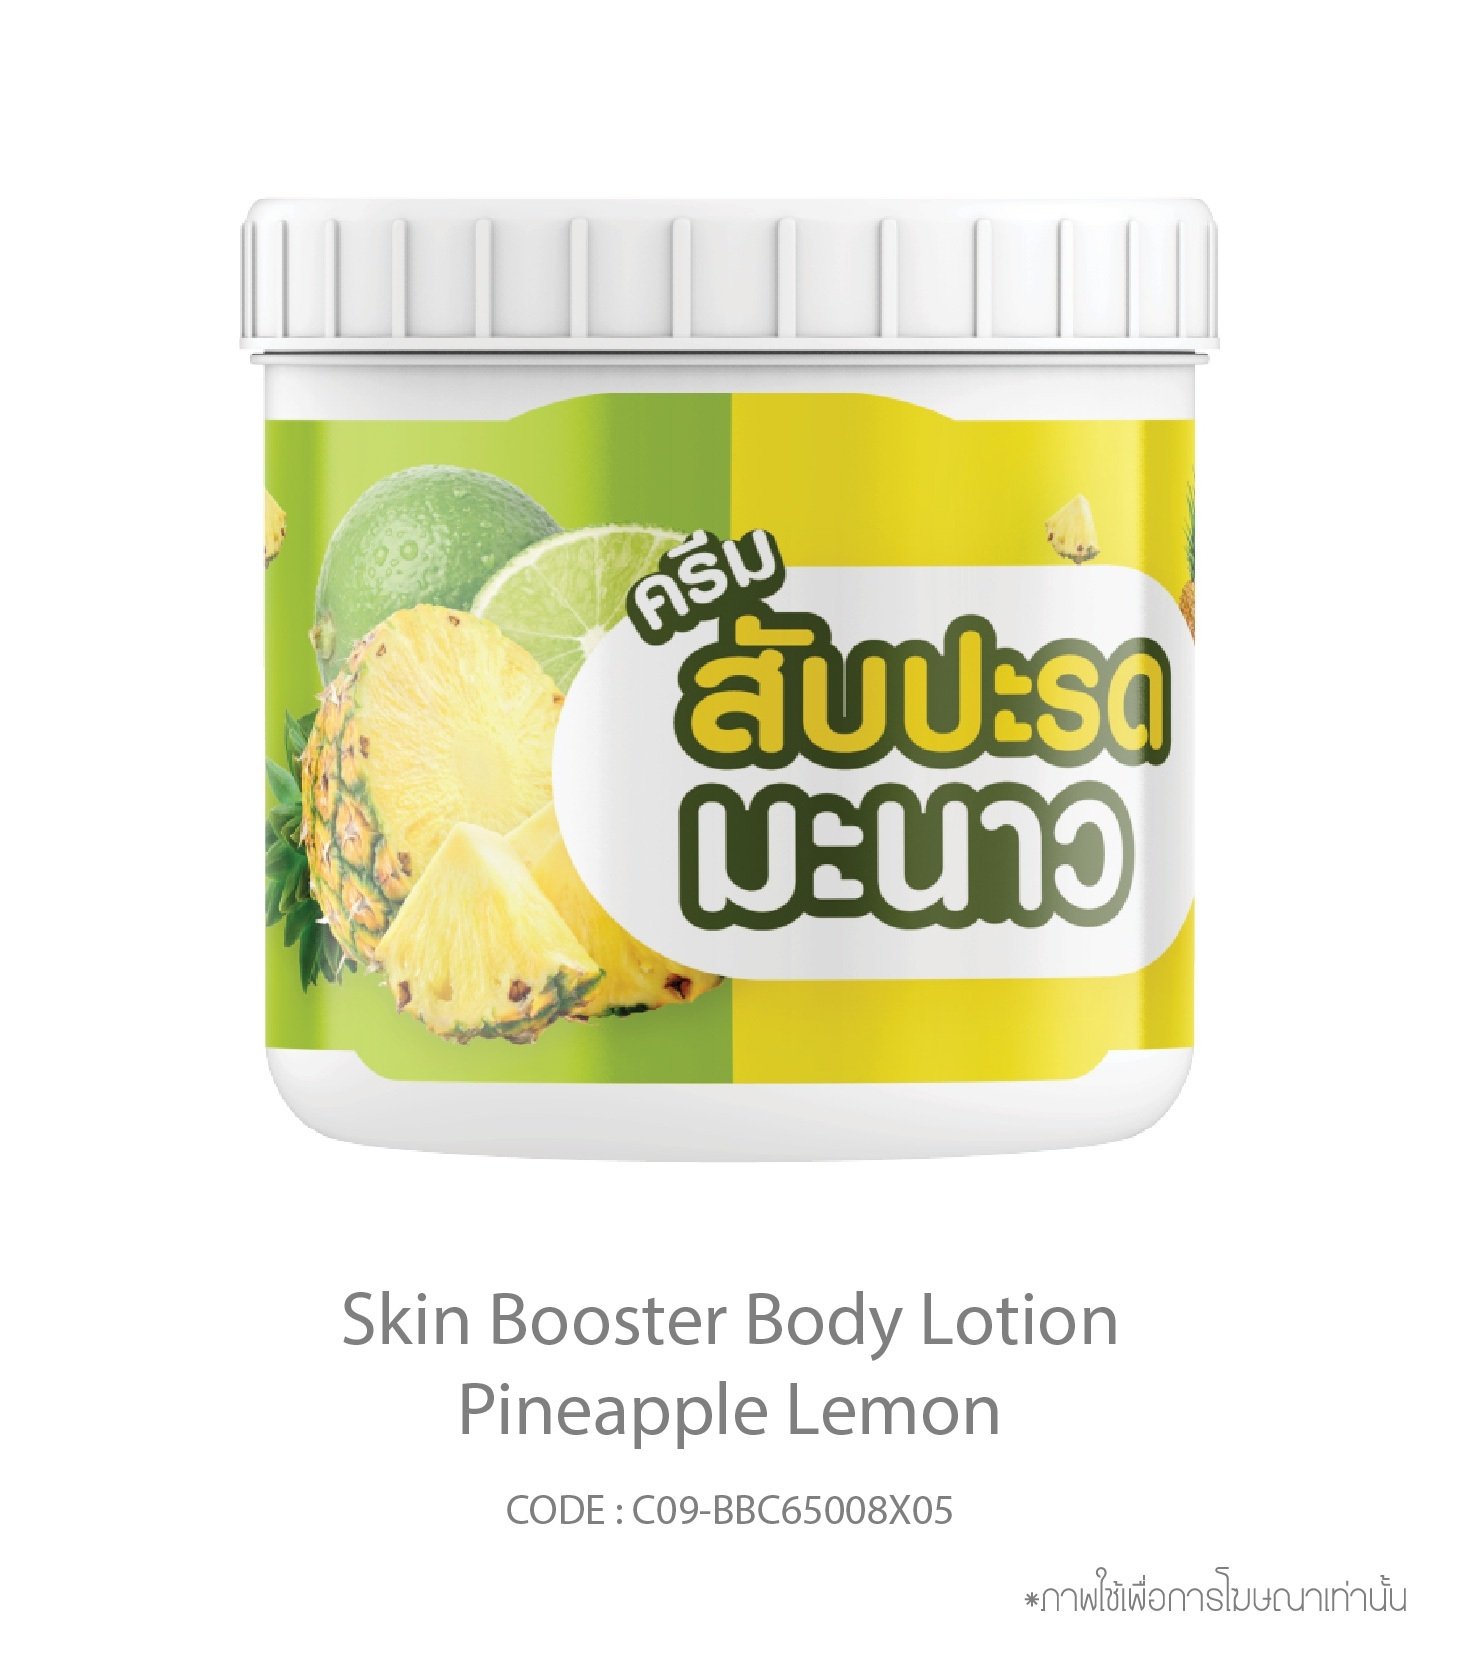 Skin Booster Body Lotion Pineapple Lemon